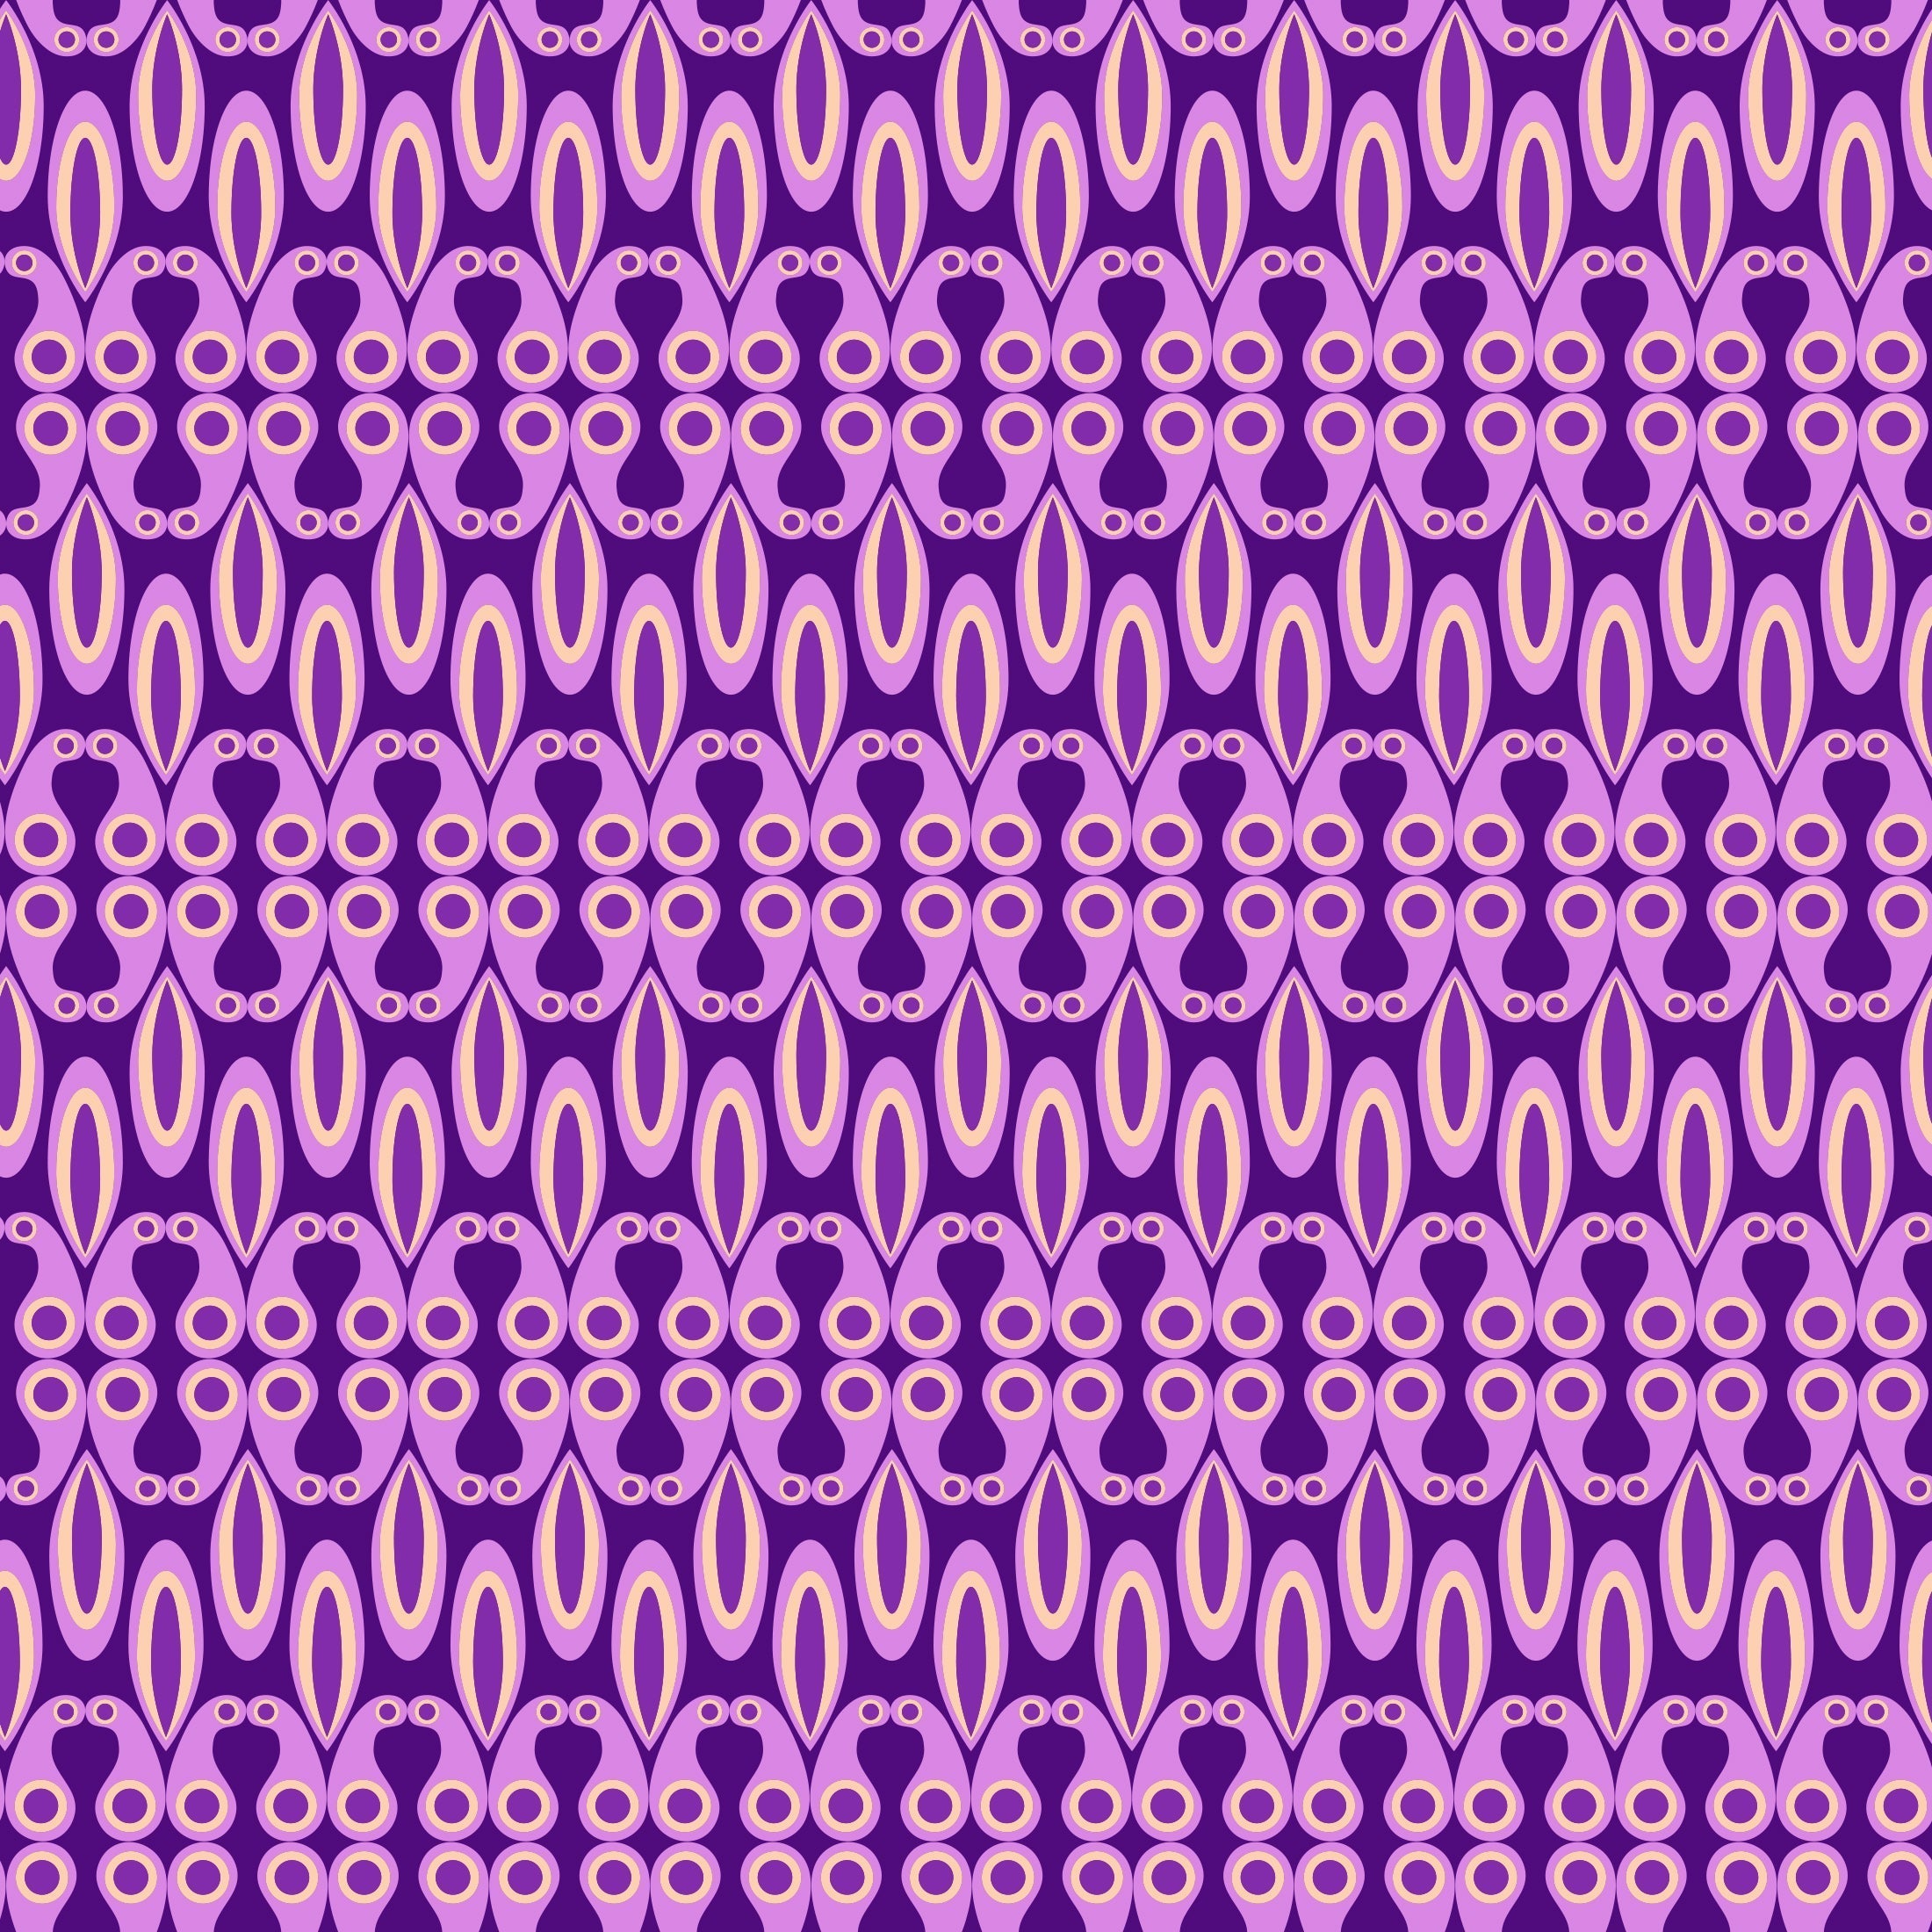 CoolWalls.ca Wallpaper 20" x 12" (Sample Rolls) Purple Shapes Wallpaper Seamless 28" Rolls Peel-N-Stick DIY Peel-N-Stick 28" Rolls ID_01